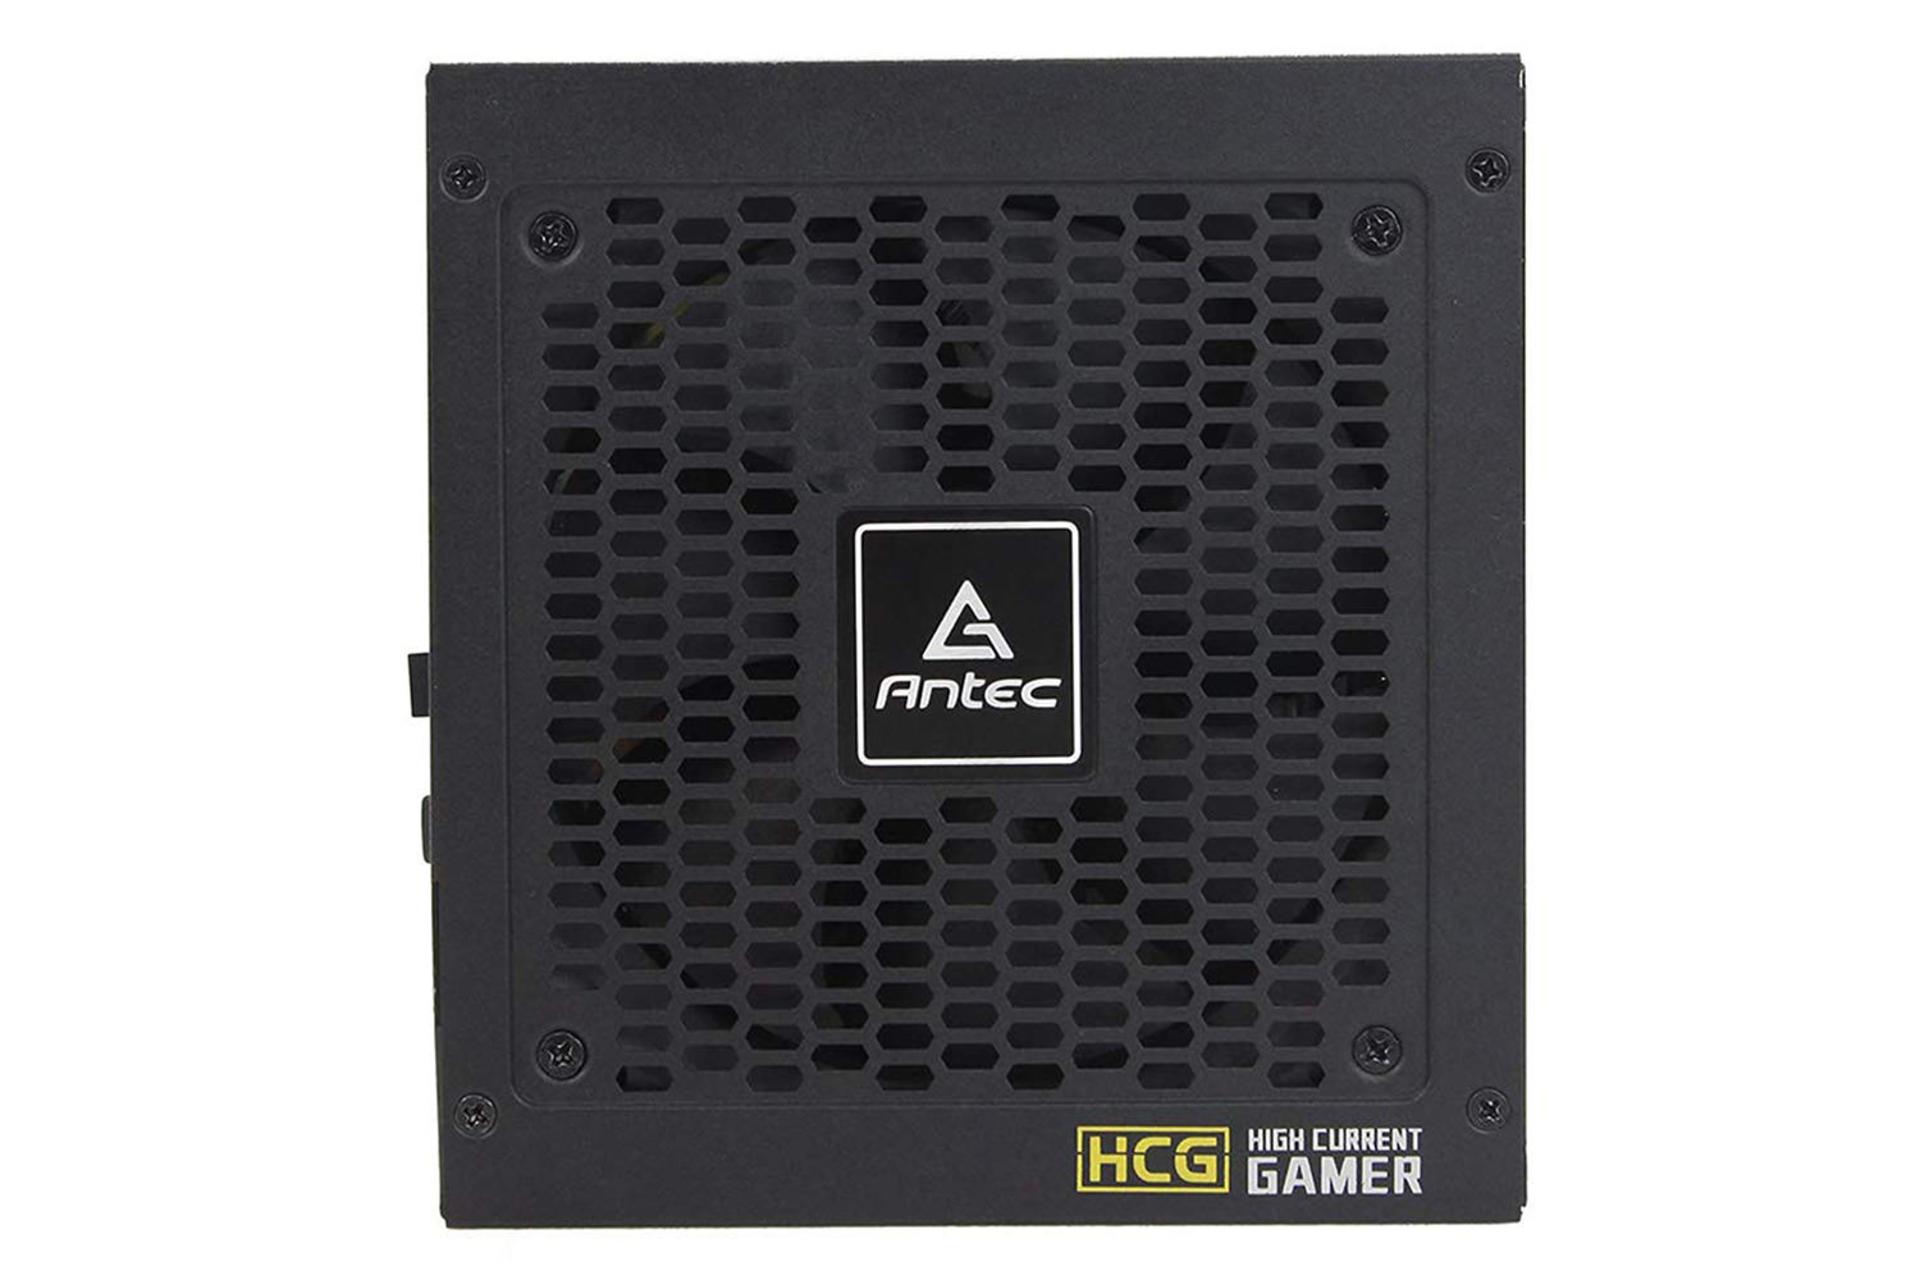 پاور کامپیوتر انتک HCG850 با توان 850 وات نمای فن